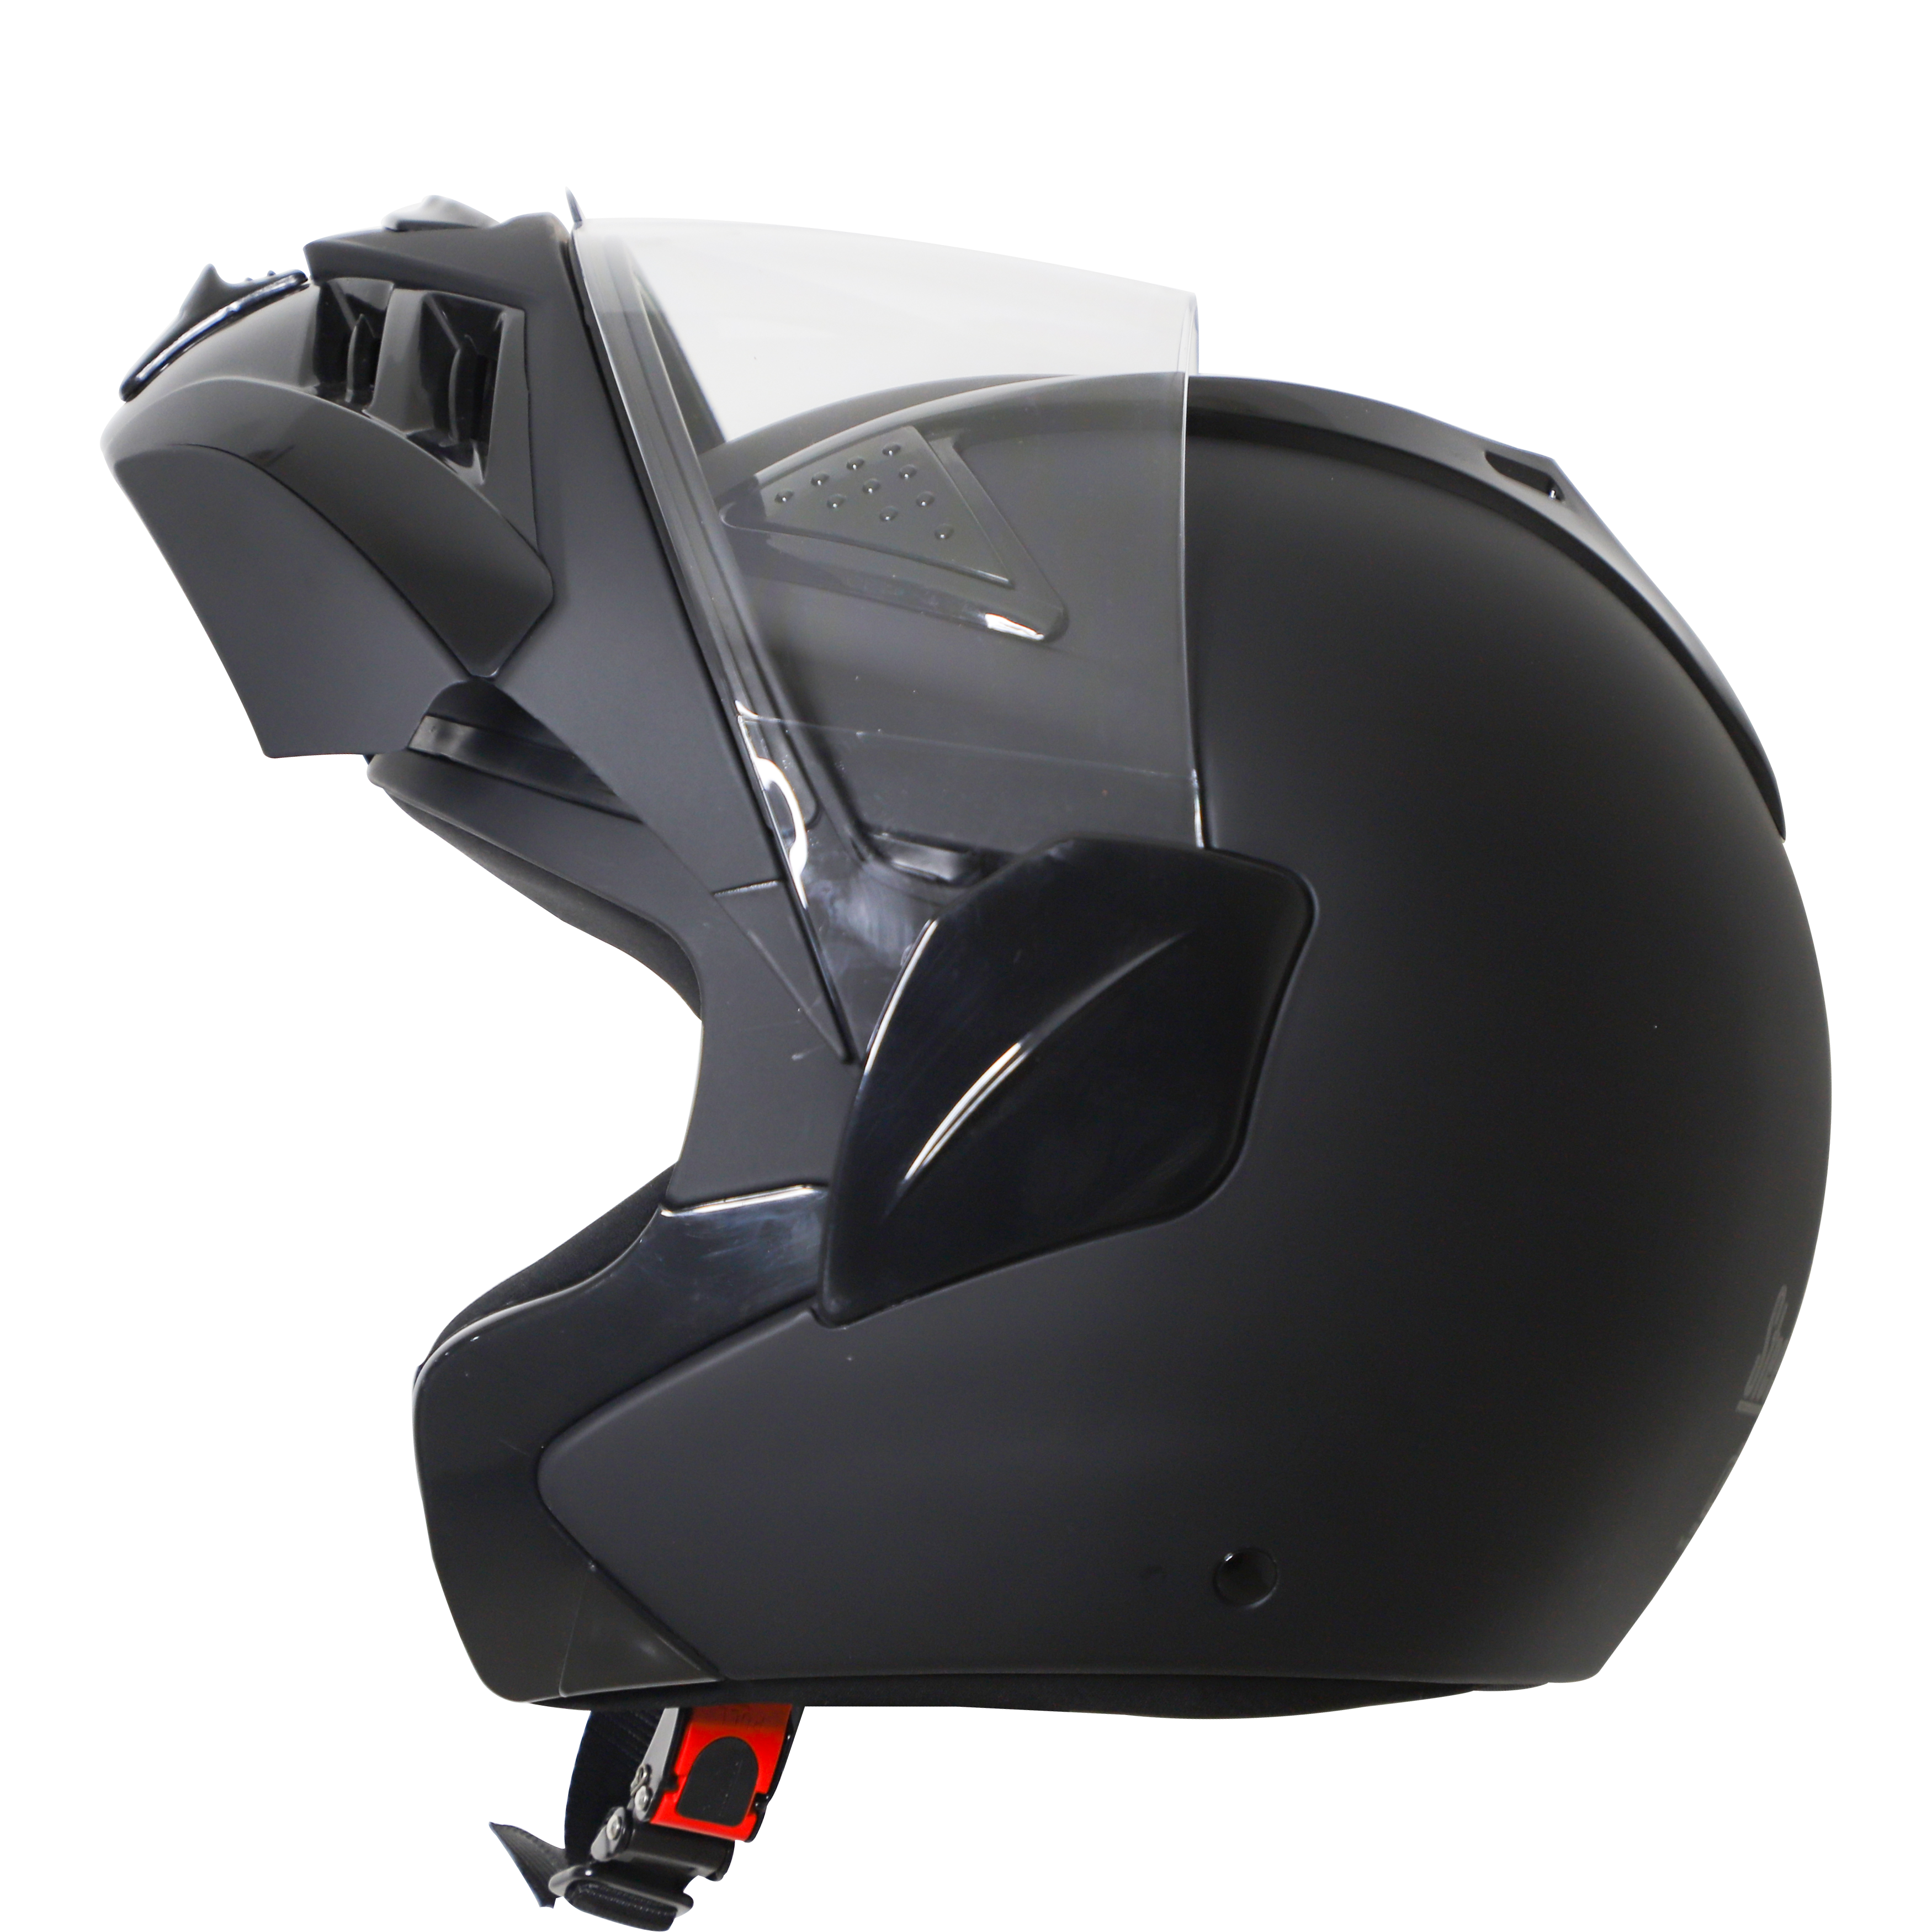 Steelbird SB-34 TRX ISI Certified Flip-Up Helmet For Men And Women (Matt Axis Grey With Clear Visor)